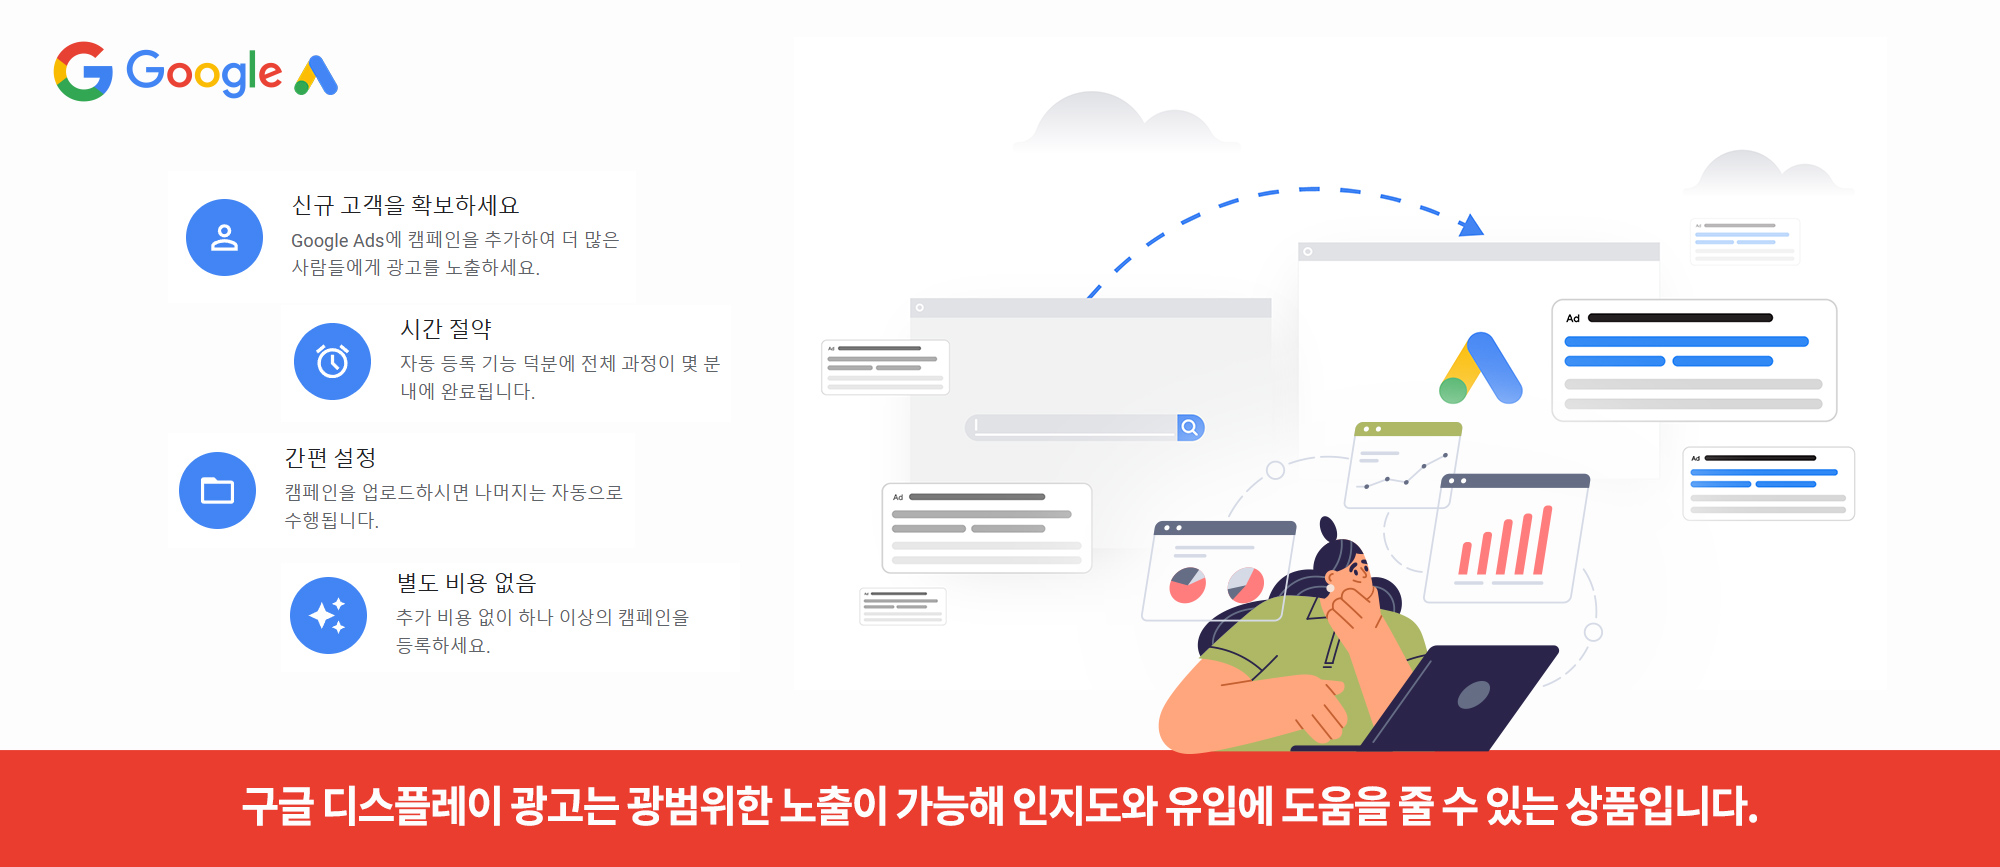 구글 GDN 광고의 특징&#44; 시간 절약과 신규 고객 유입